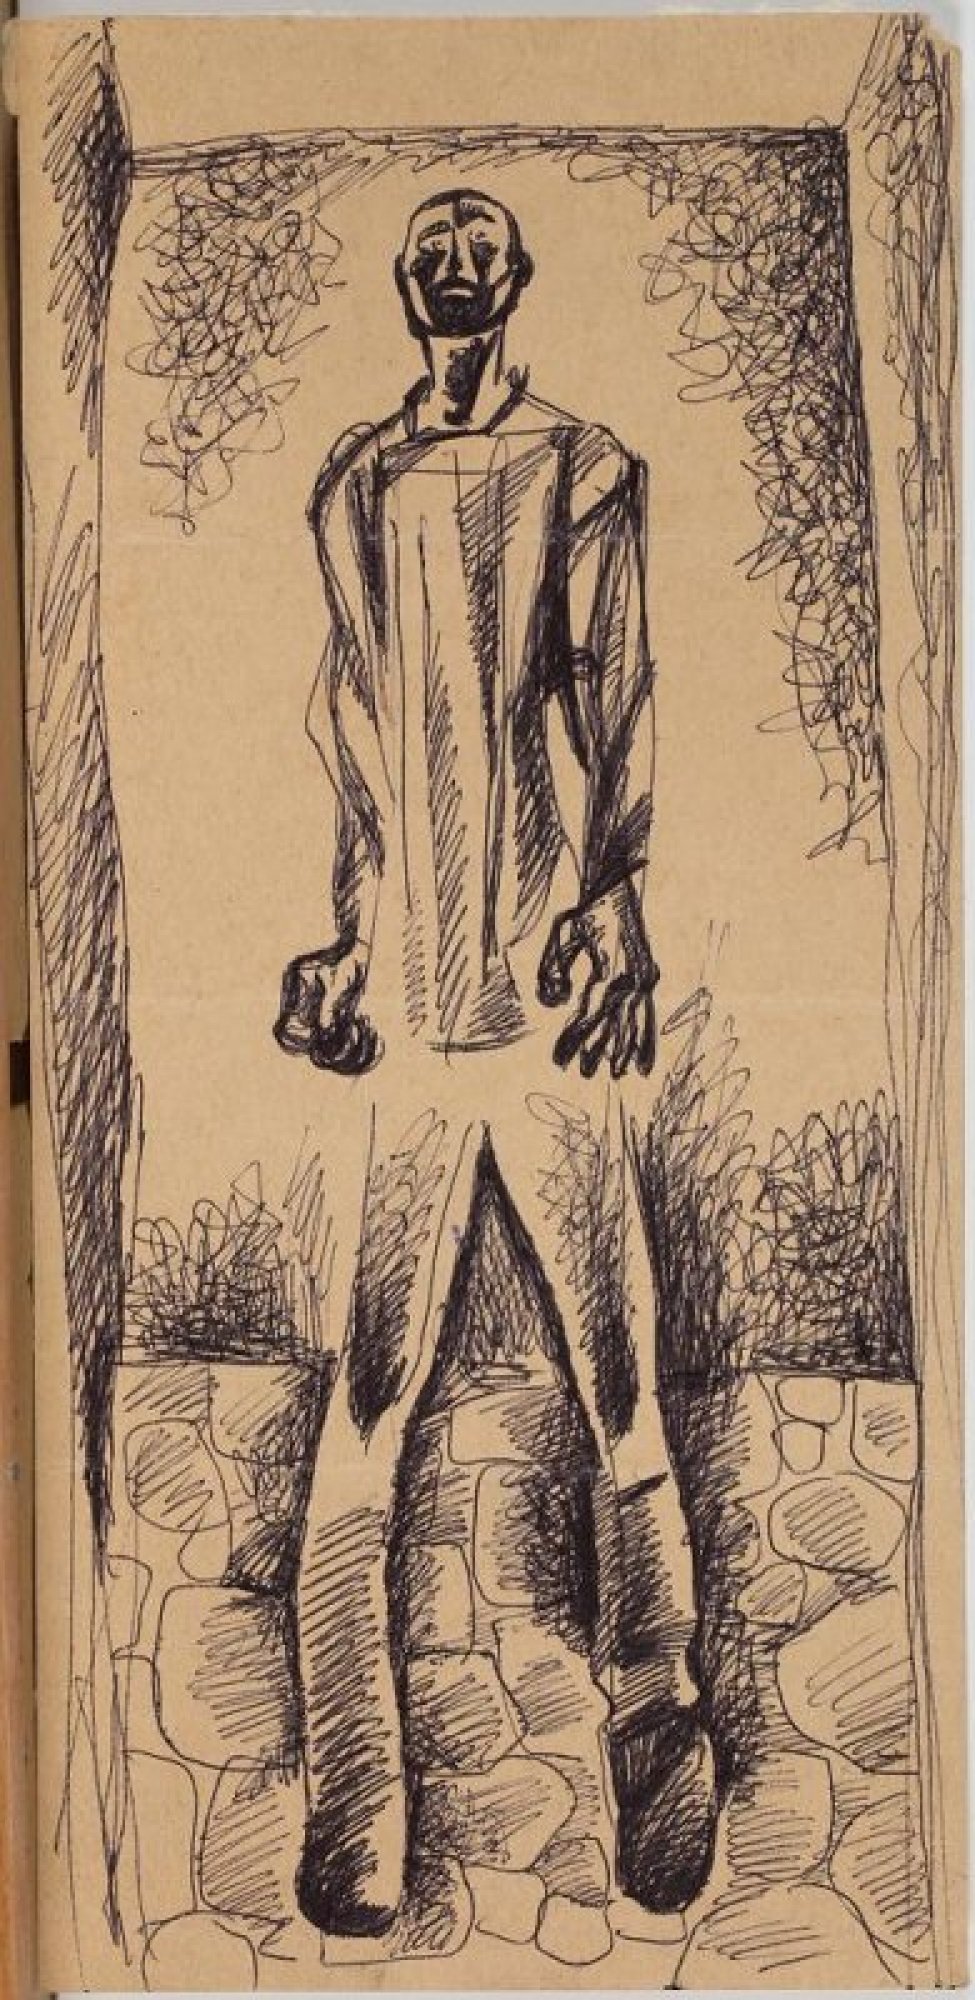 В центре композиции в проеме двери на брусчатке изображен в рост молодой худощавый мужчина с крепко прижатыми к телу крупными руками.